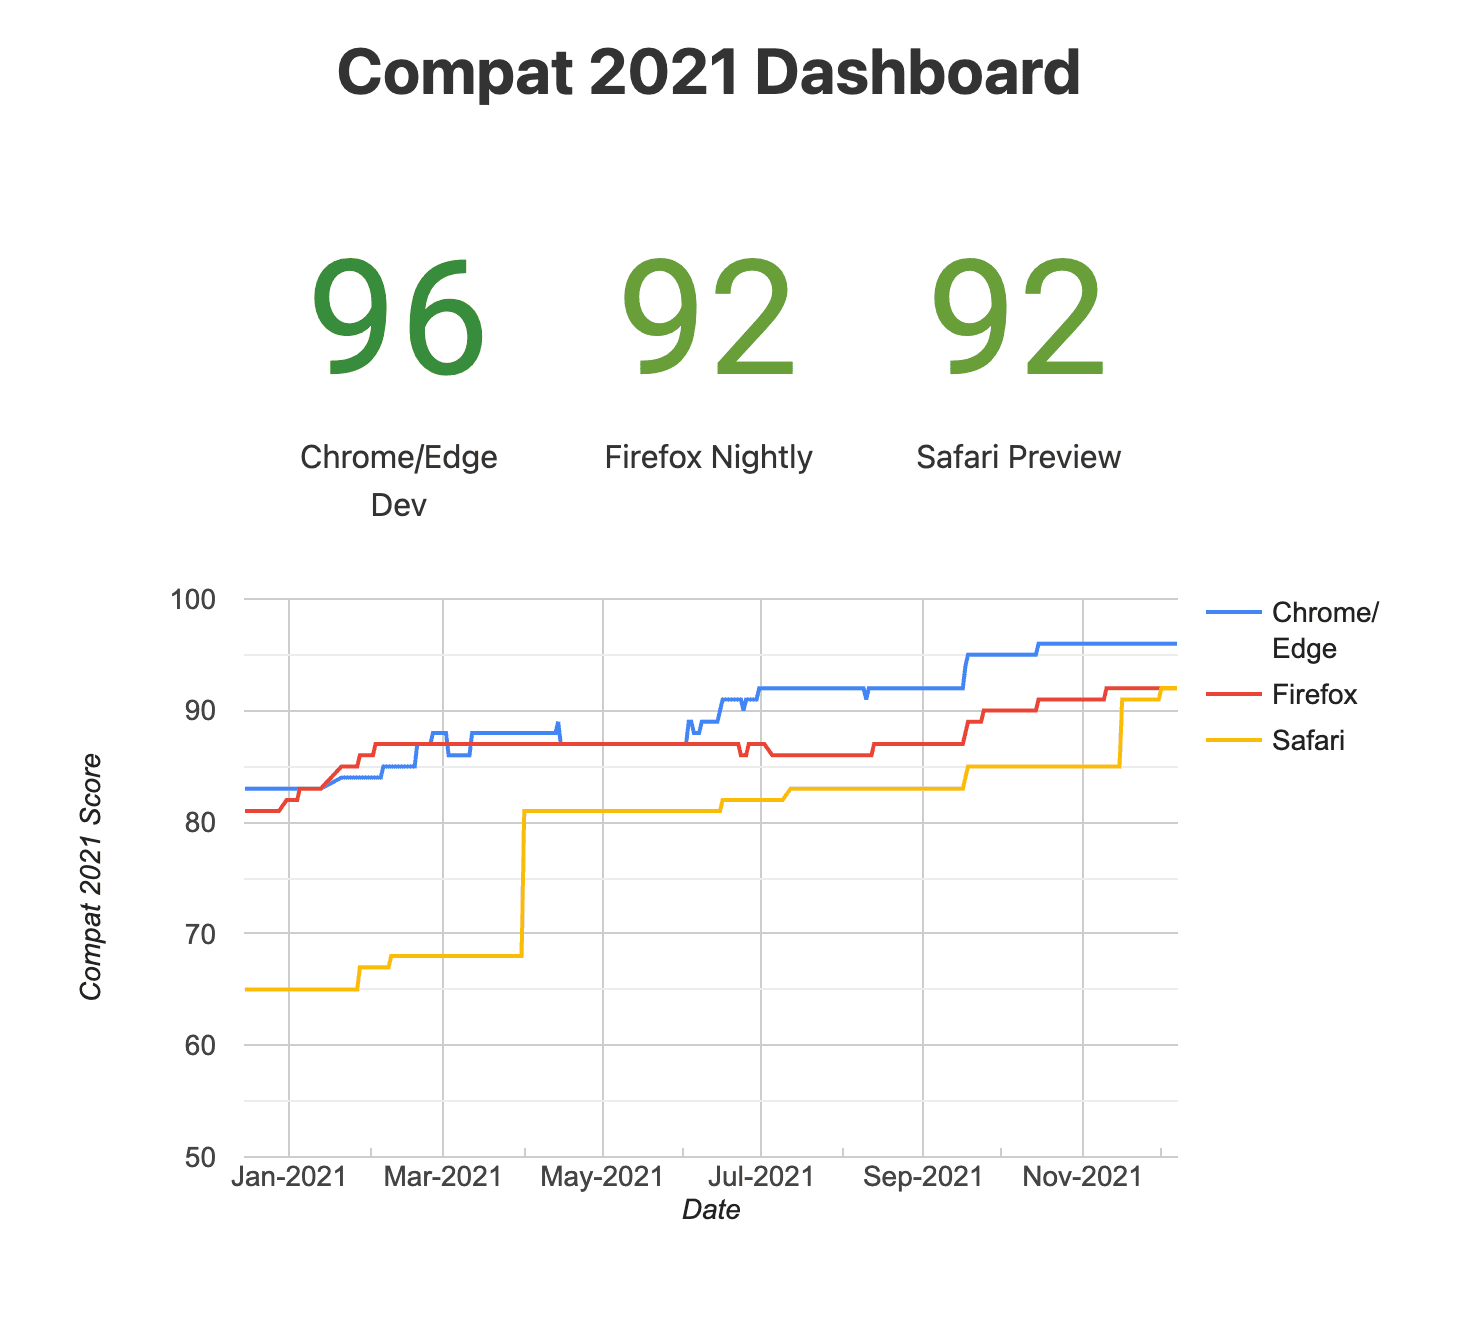 Compat のスナップショット
2021 年のダッシュボード（試験運用版ブラウザ）